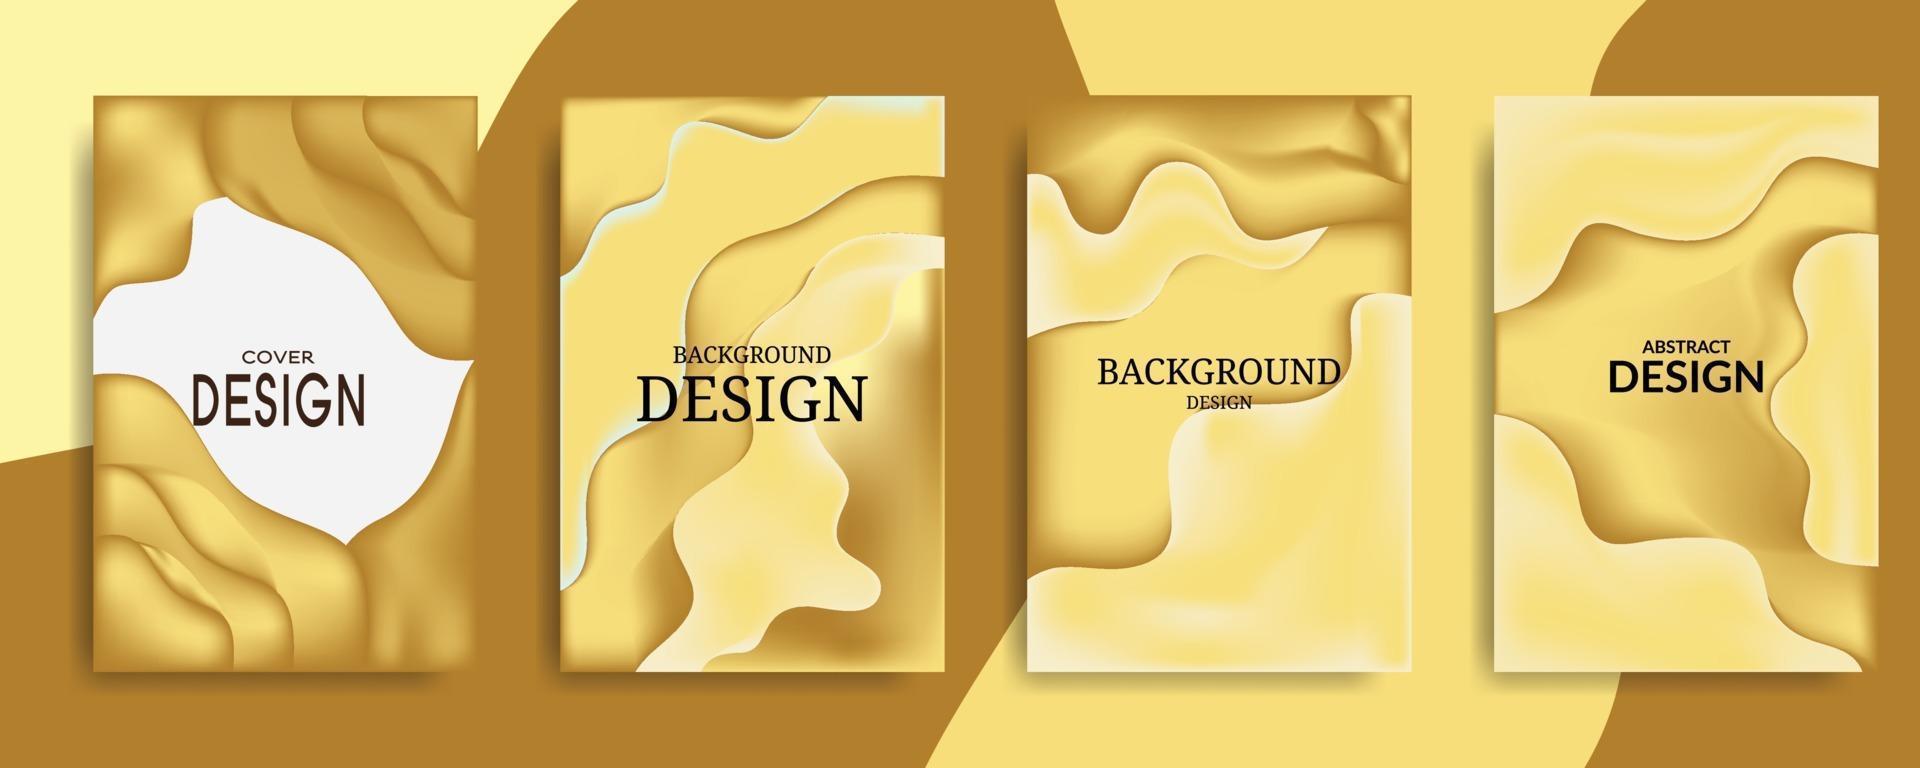 gradiente abstracto de oro para la plantilla de vector de diseño de fondo de cubierta